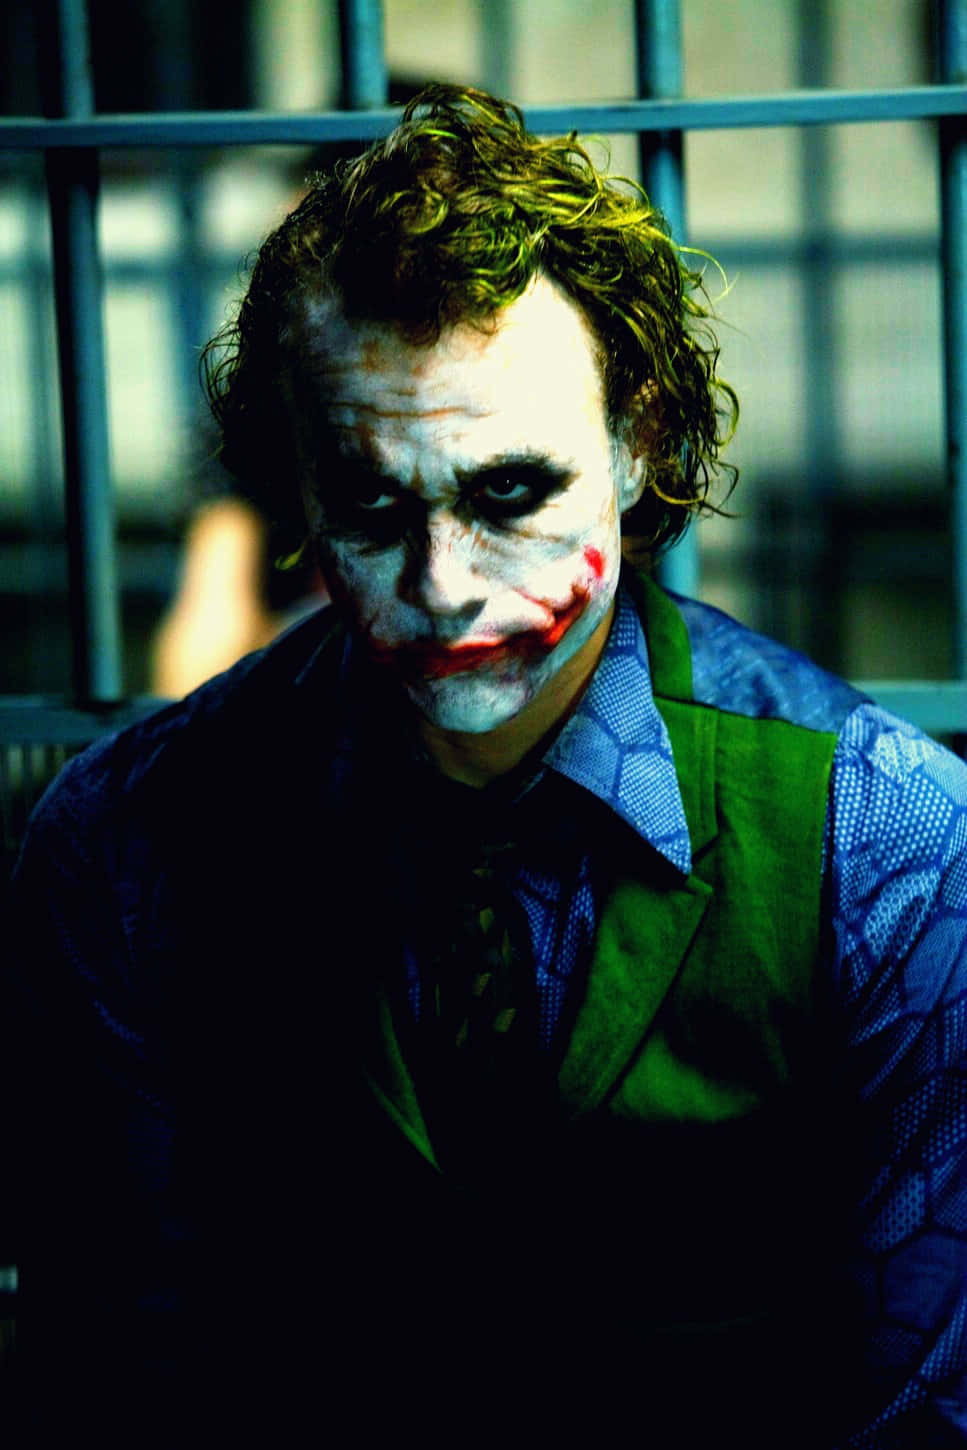 Jokerbakgrundsbild - Joker Bakgrundsbild